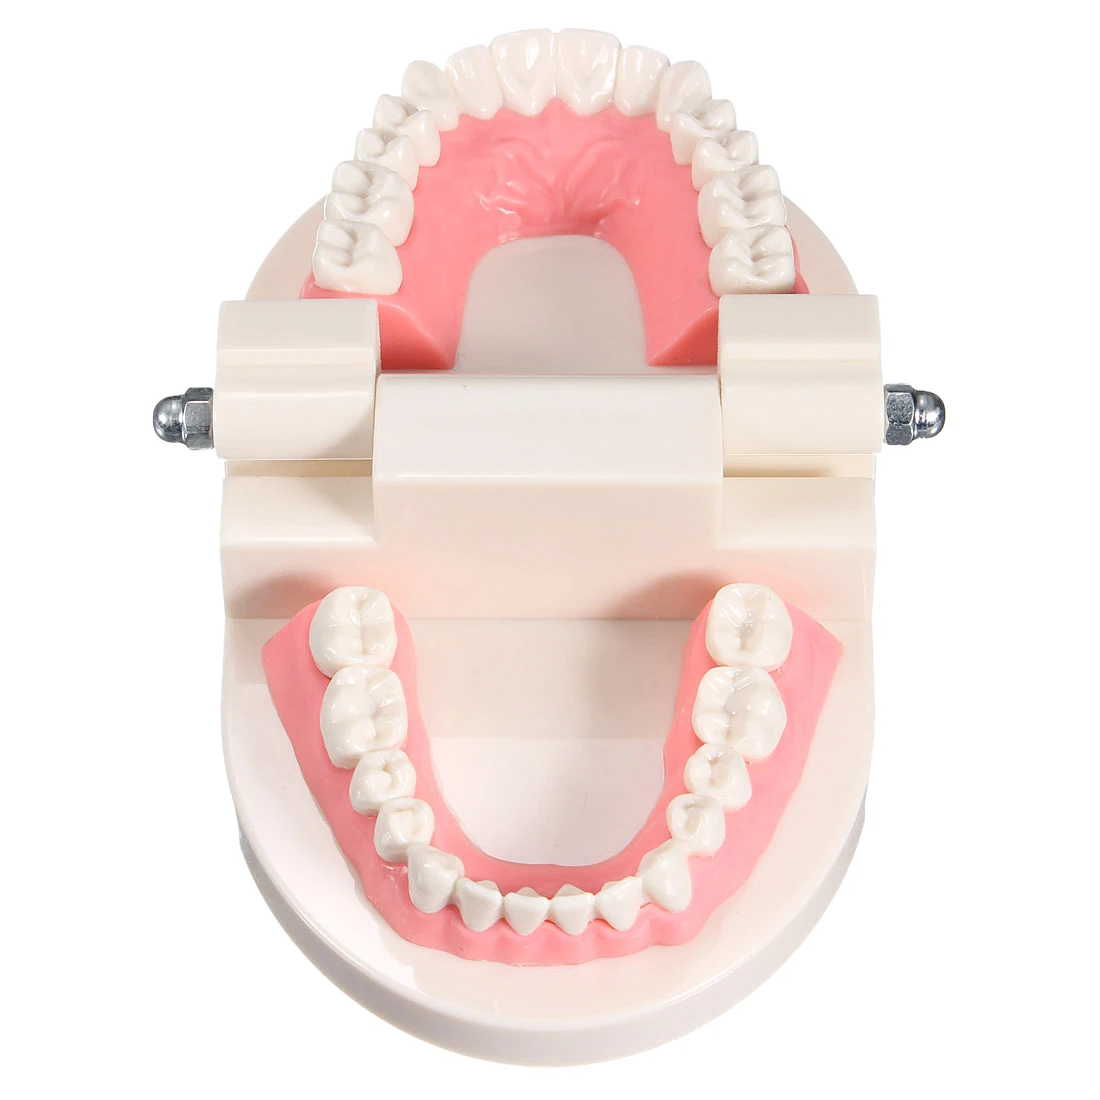 Новая зубная Стоматологическая зубная модель учит розовый gummy десны стандарт для медицинских целей